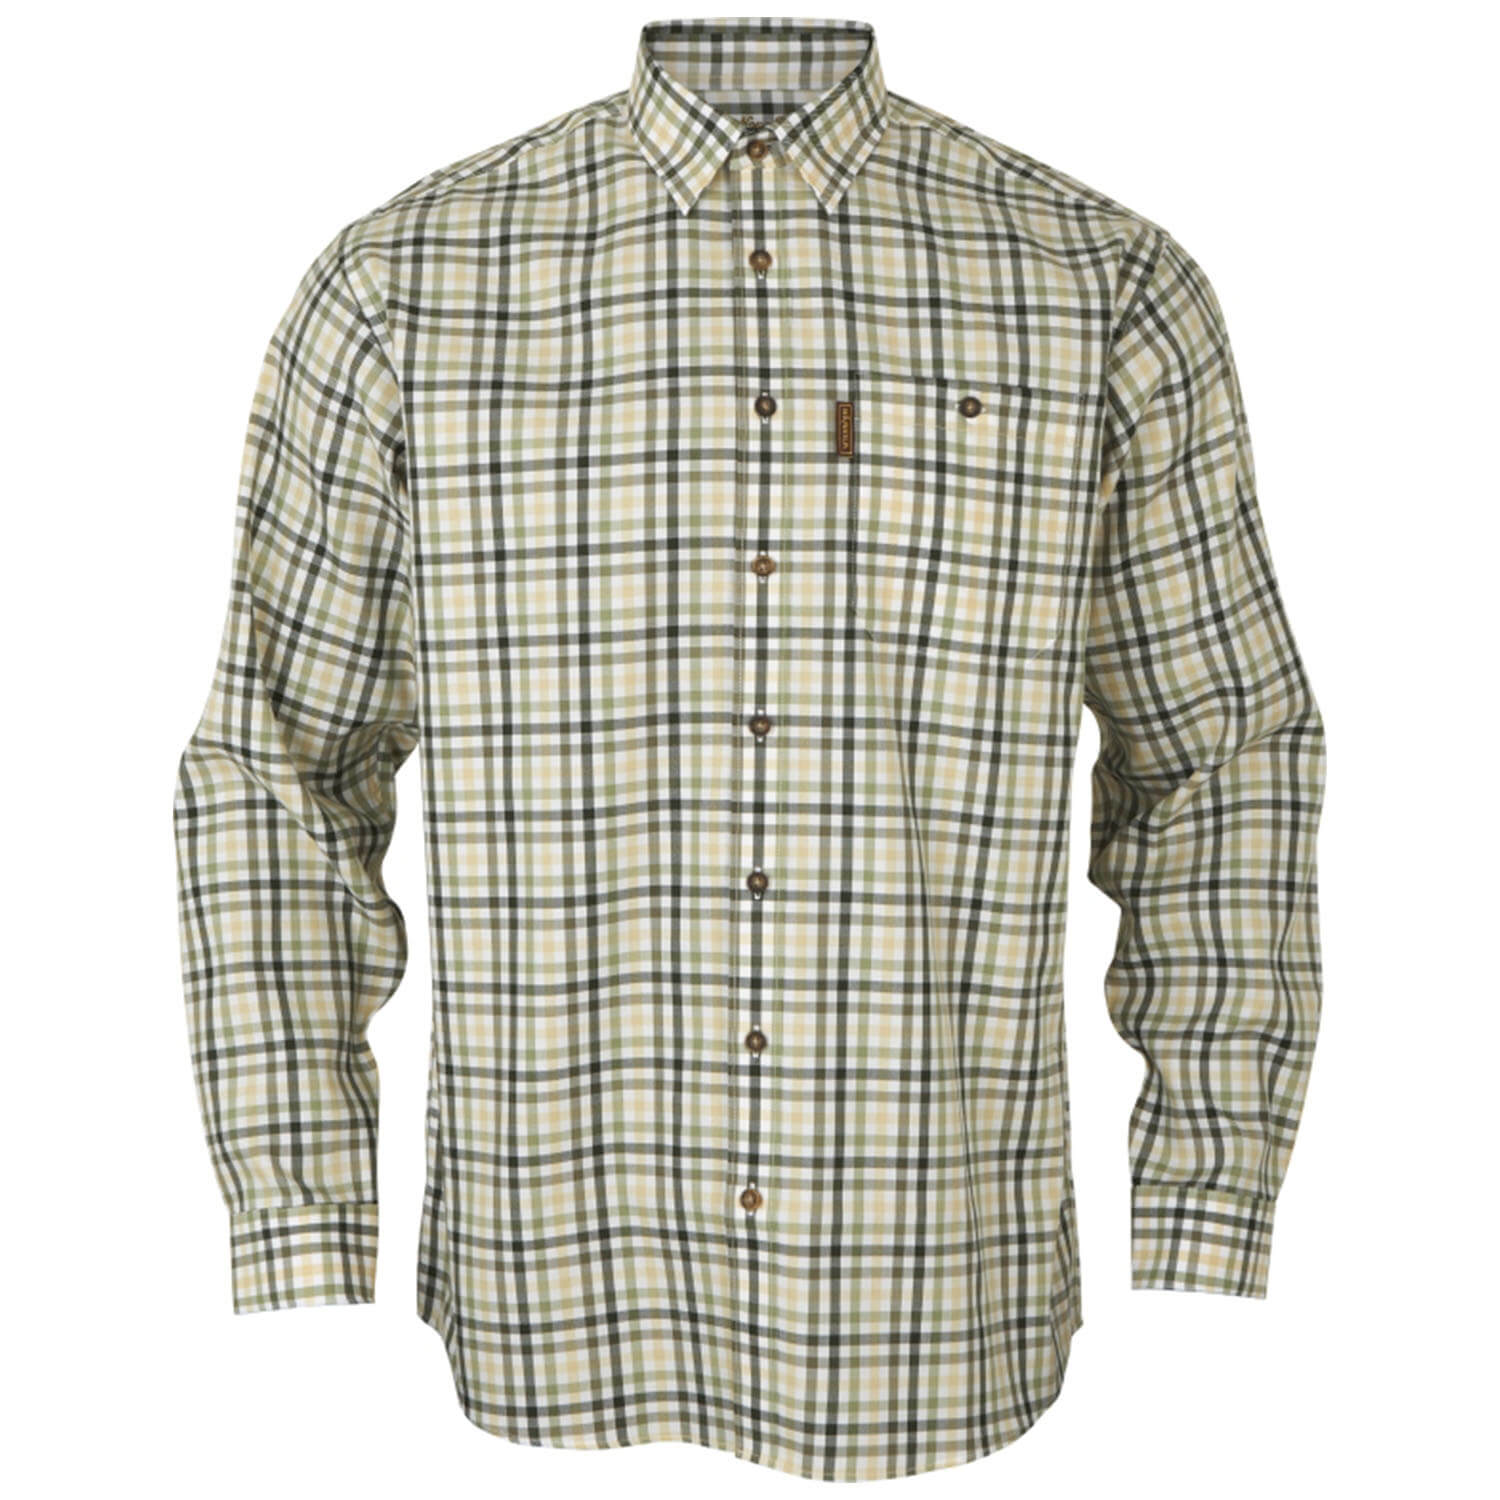 Härkila hunting shirt milford (beech green check) - Hunting Shirts